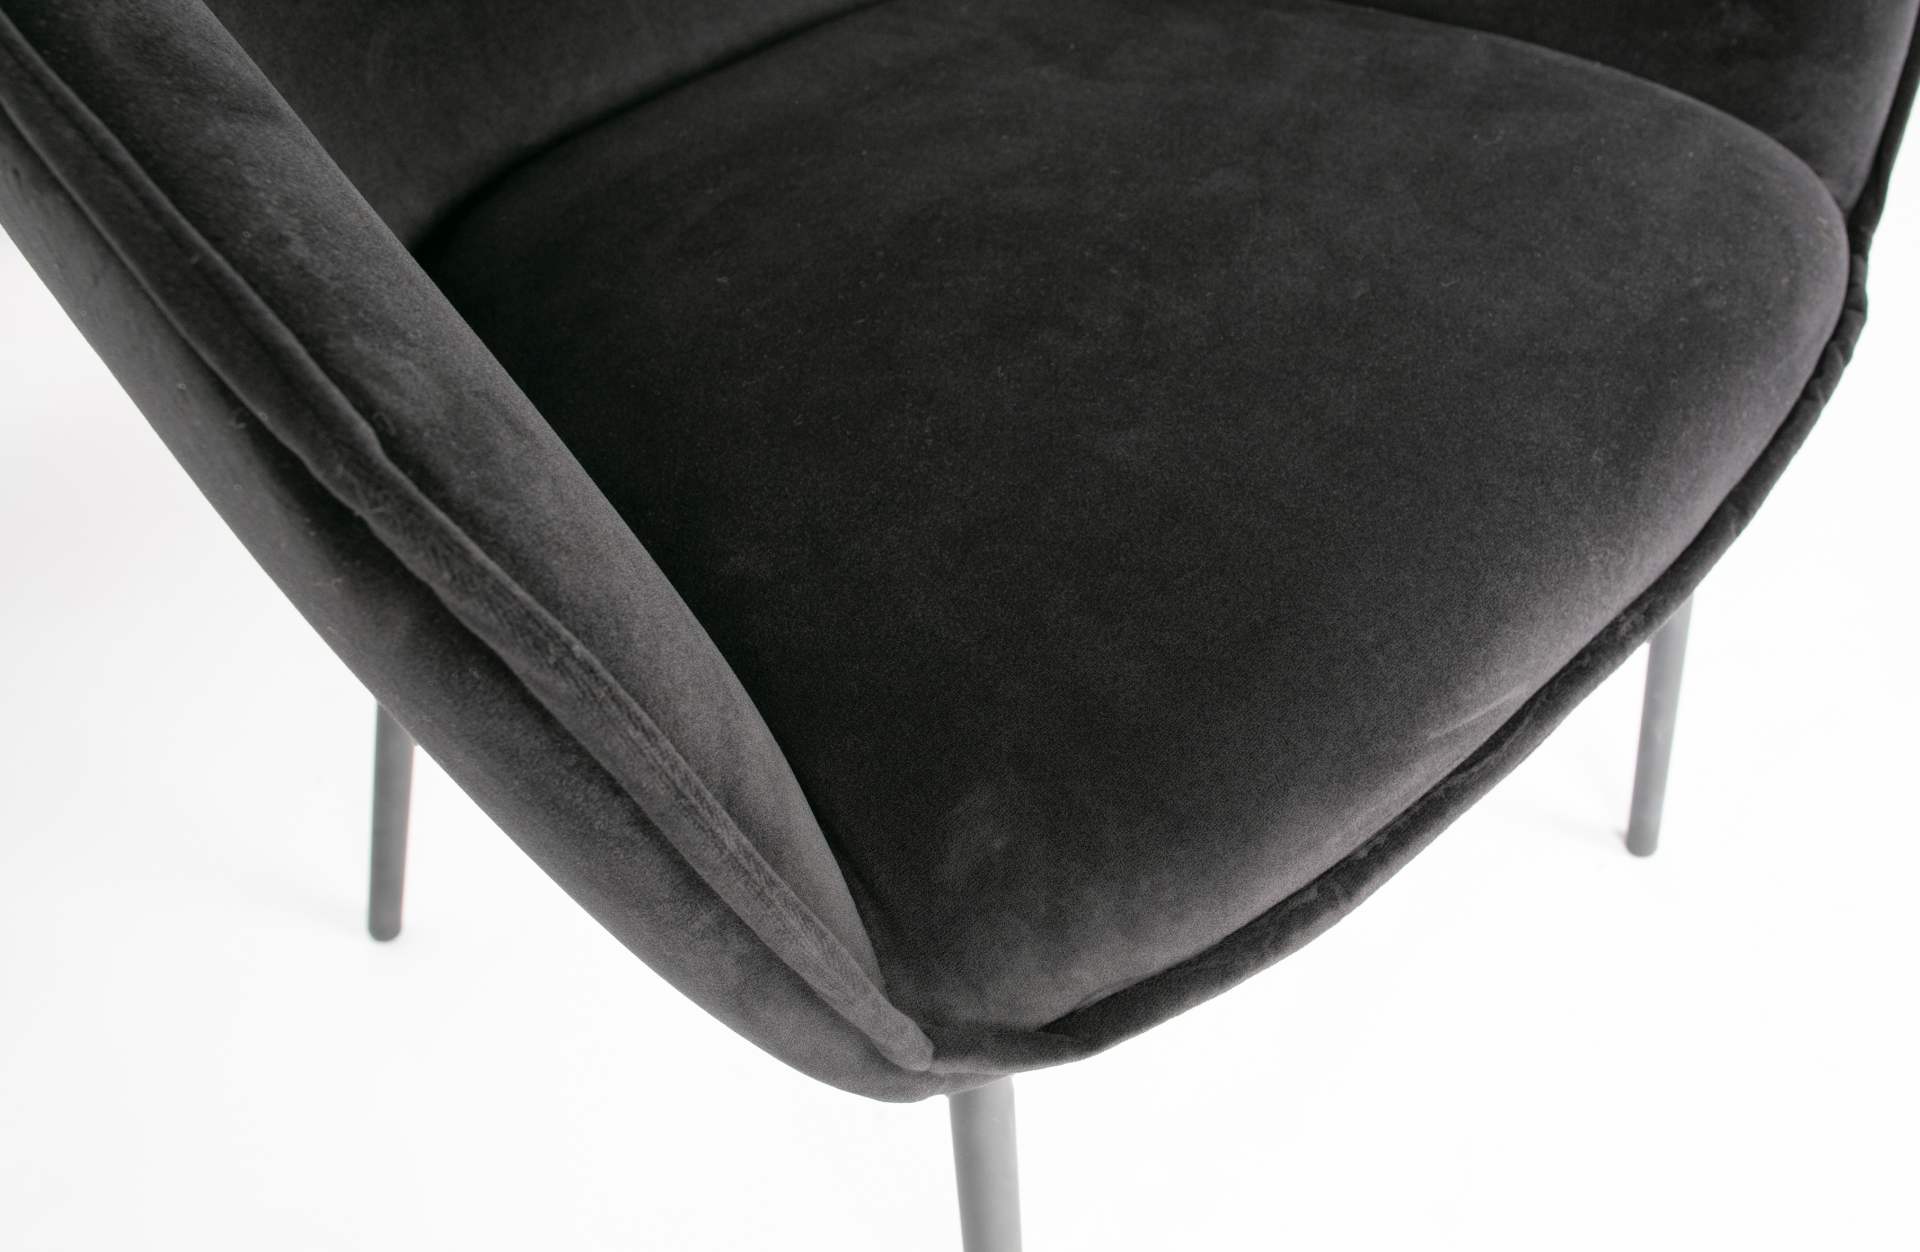 Der Esszimmerstuhl Sien wurde mit einem Samt Bezug bezogen. Er ist immer als 2er-Set erhältlich. Der Stuhl ist in zwei Varianten verfügbar, dieser besitzt die Farbe Schwarz.